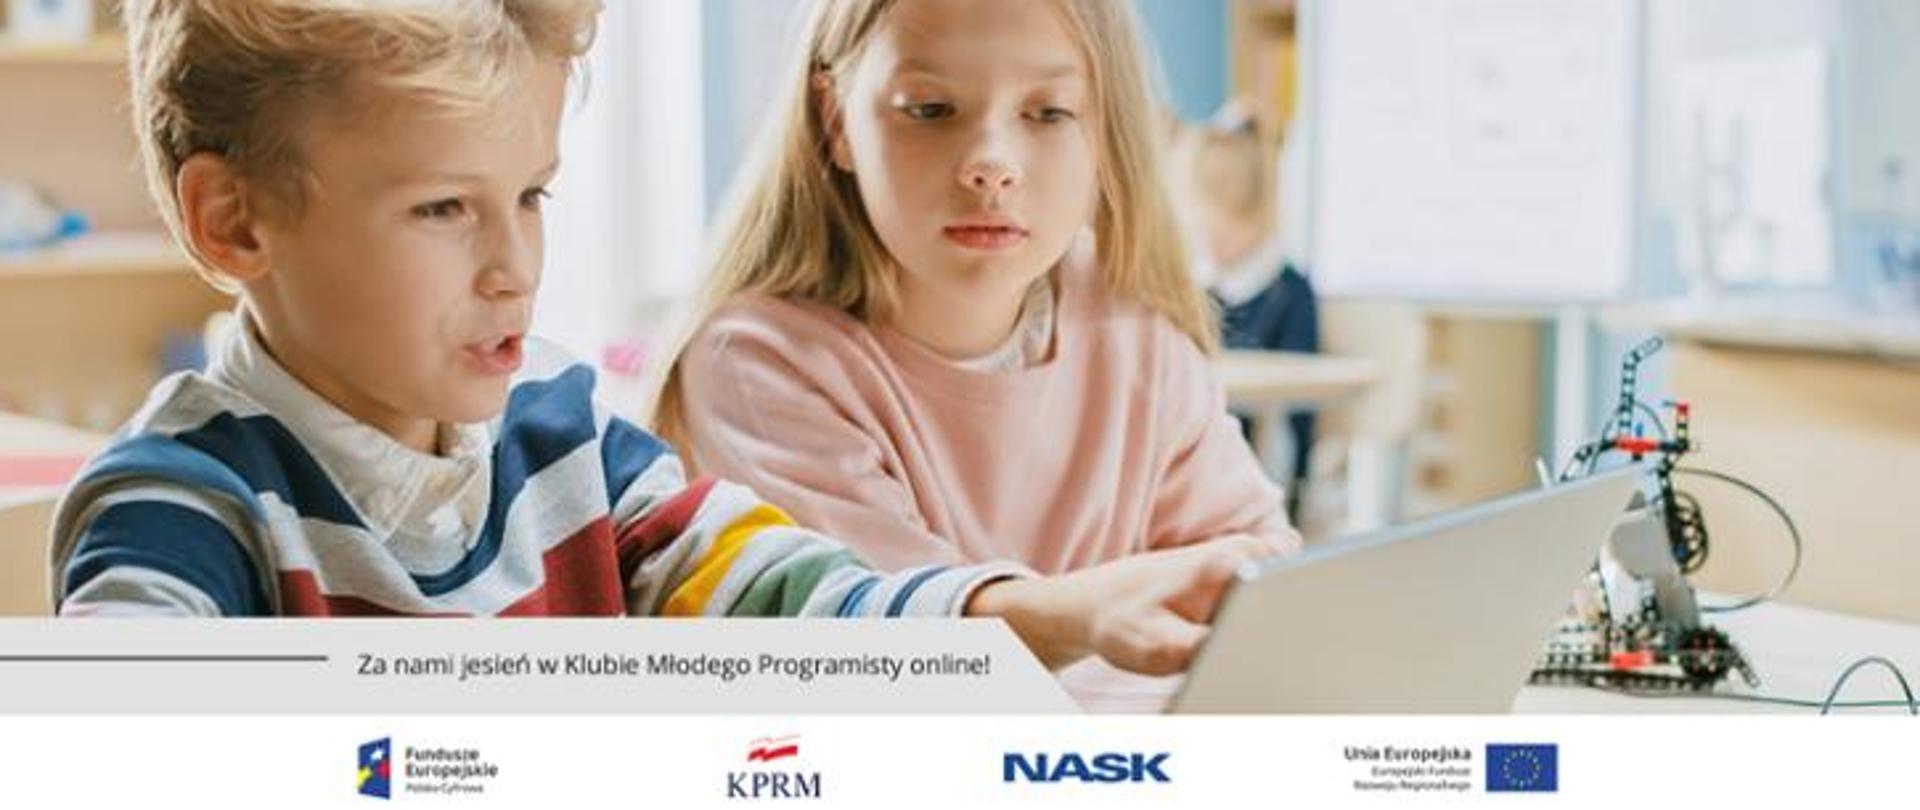 Dwójka dzieci bawi się tabletem, w tle widać robota i klasę. U dołu znajduje się pasek logotypów: Europejskie Fundusze Polska Cyfrowa, Kancelaria Prezesa Rady Ministrów,, NASK i Unia Europejska Europejski Fundusz Rozwoju Regionalnego. 